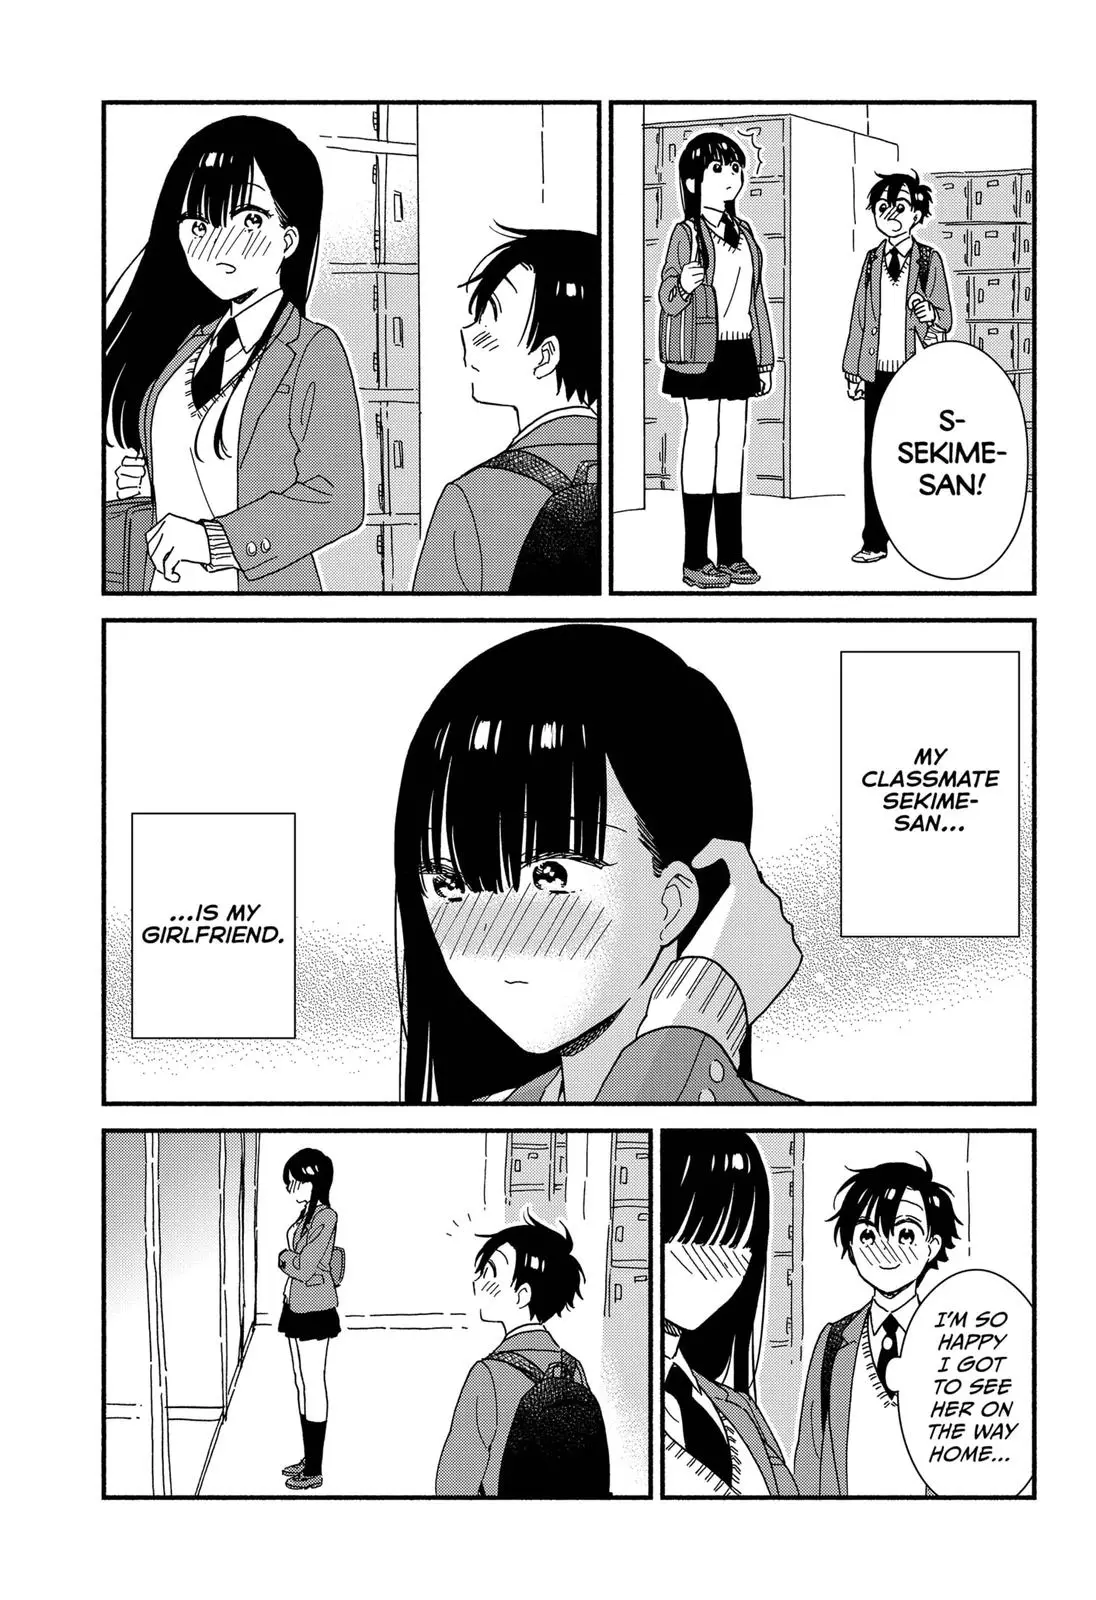 Don't Blush, Sekime-San! - 9 page 3